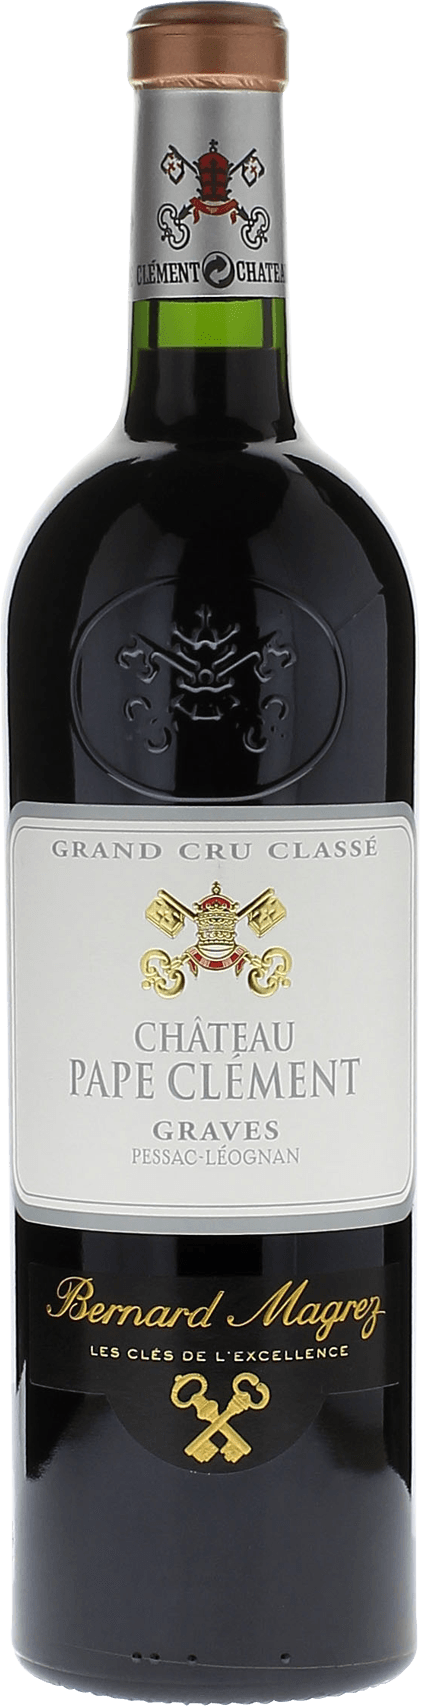 Pape clement rouge 1990 Grand Cru Class Graves, Bordeaux rouge